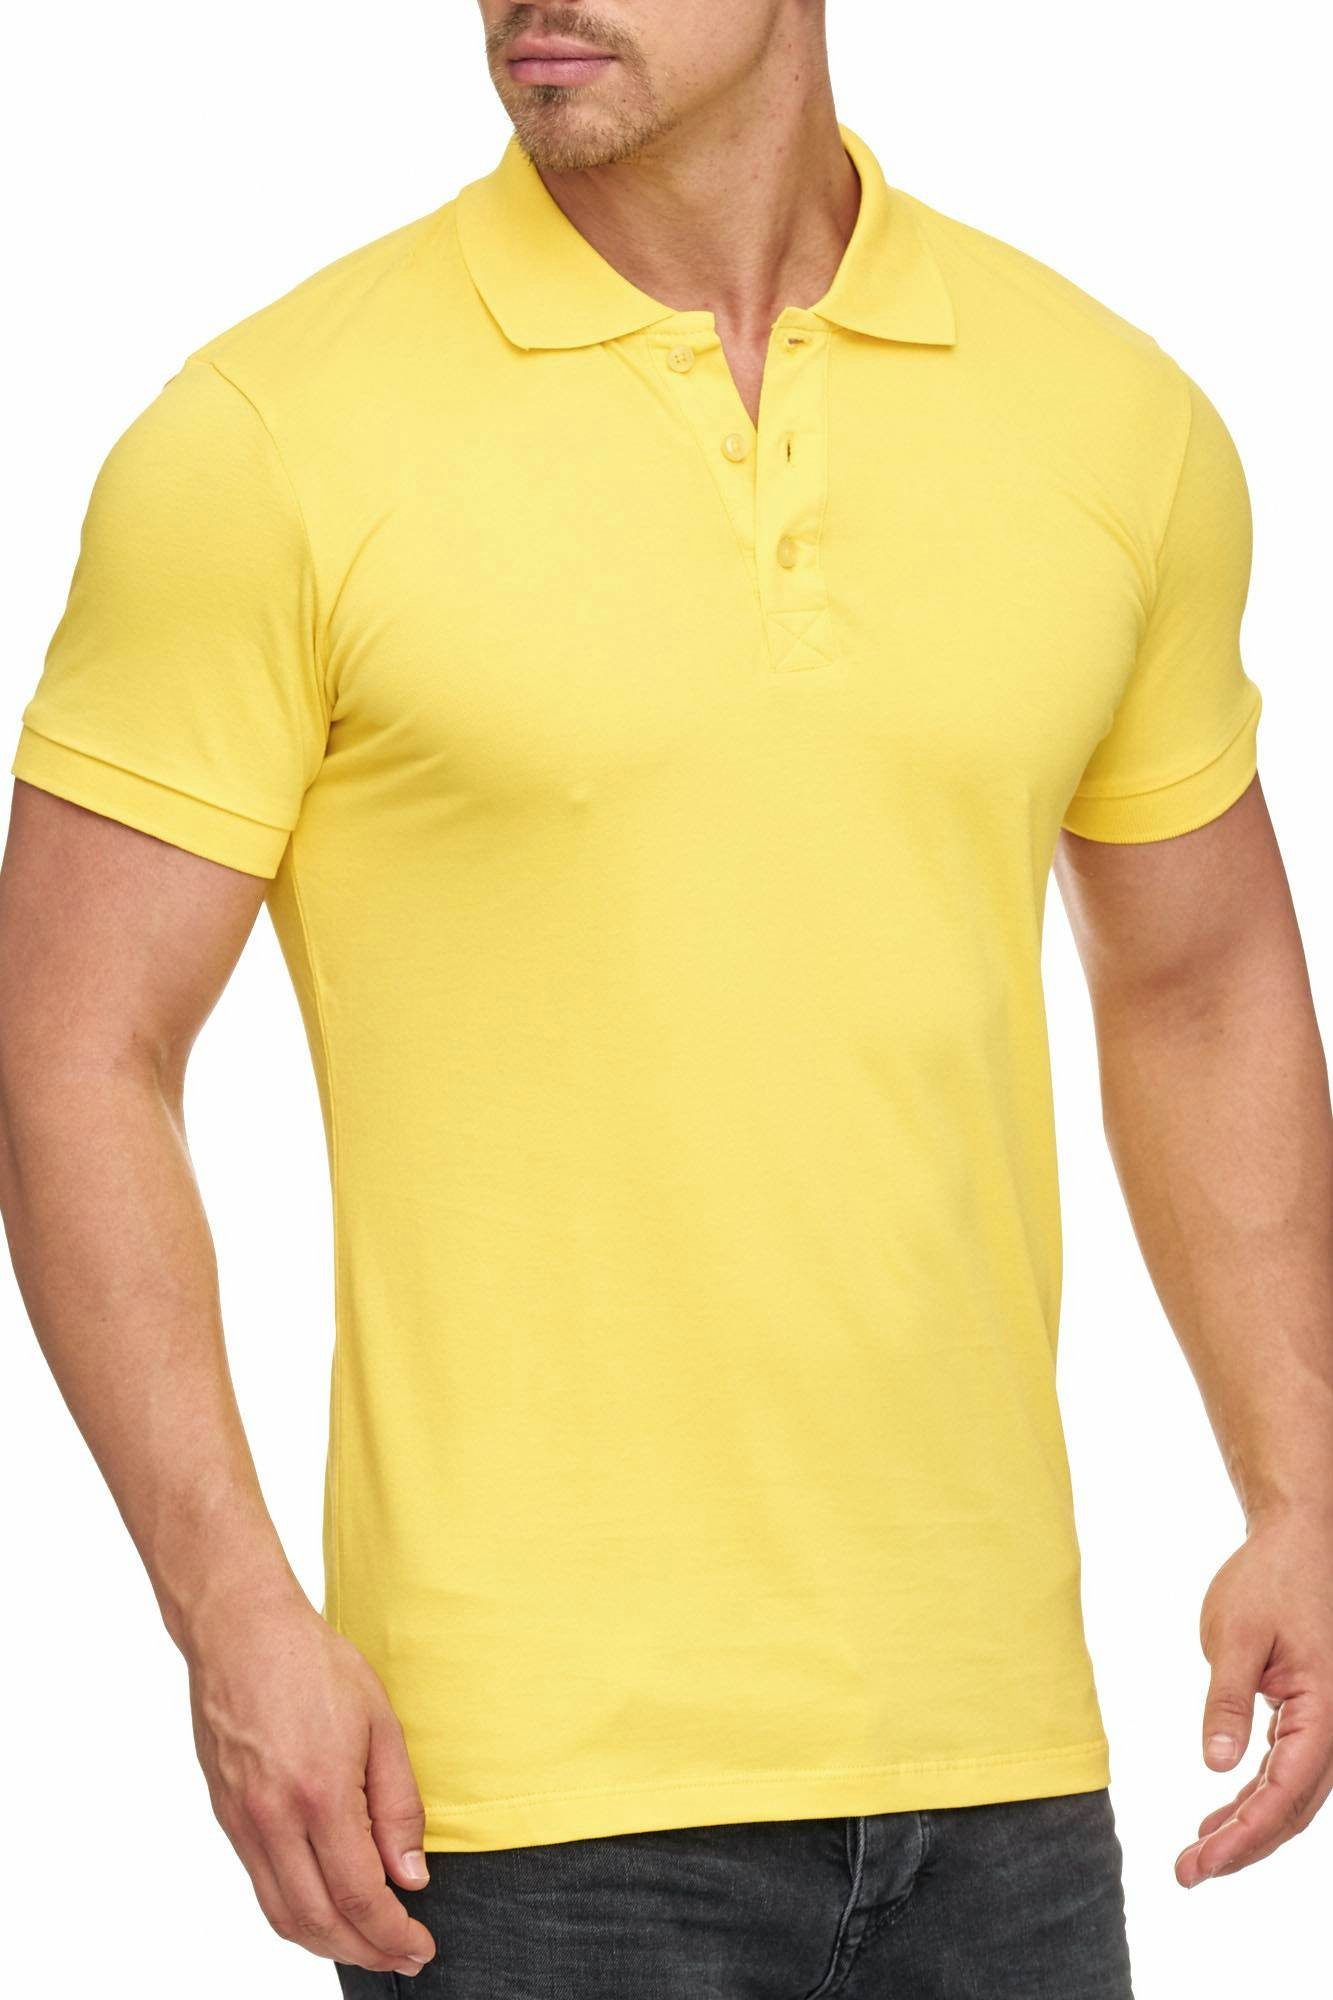 Tazzio Poloshirt 17101 zeitloses Polo Shirt gelb | Poloshirts